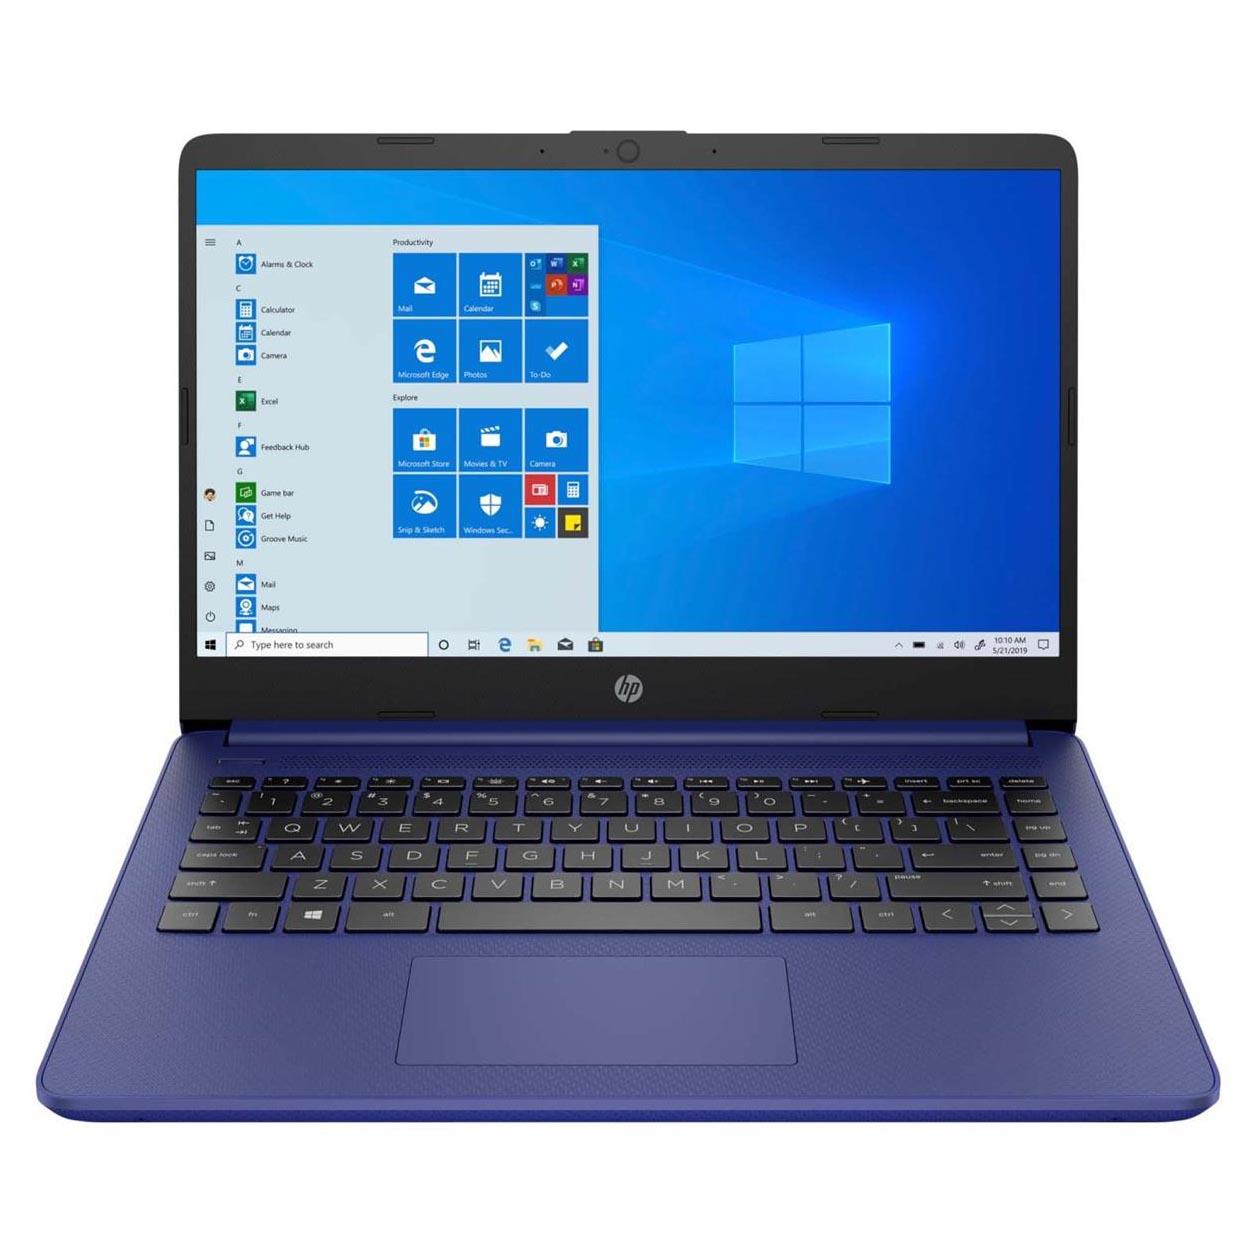 Ноутбук HP 14-dq0050nr, 14 HD Сенсорный, 4Гб/64Гб, Celeron N4020, сине-фиолетовый, английская клавиатура ноутбук hp 14 dq0060nr 14 hd сенсорный 4гб 64гб celeron n4020 угольно черный английская клавиатура